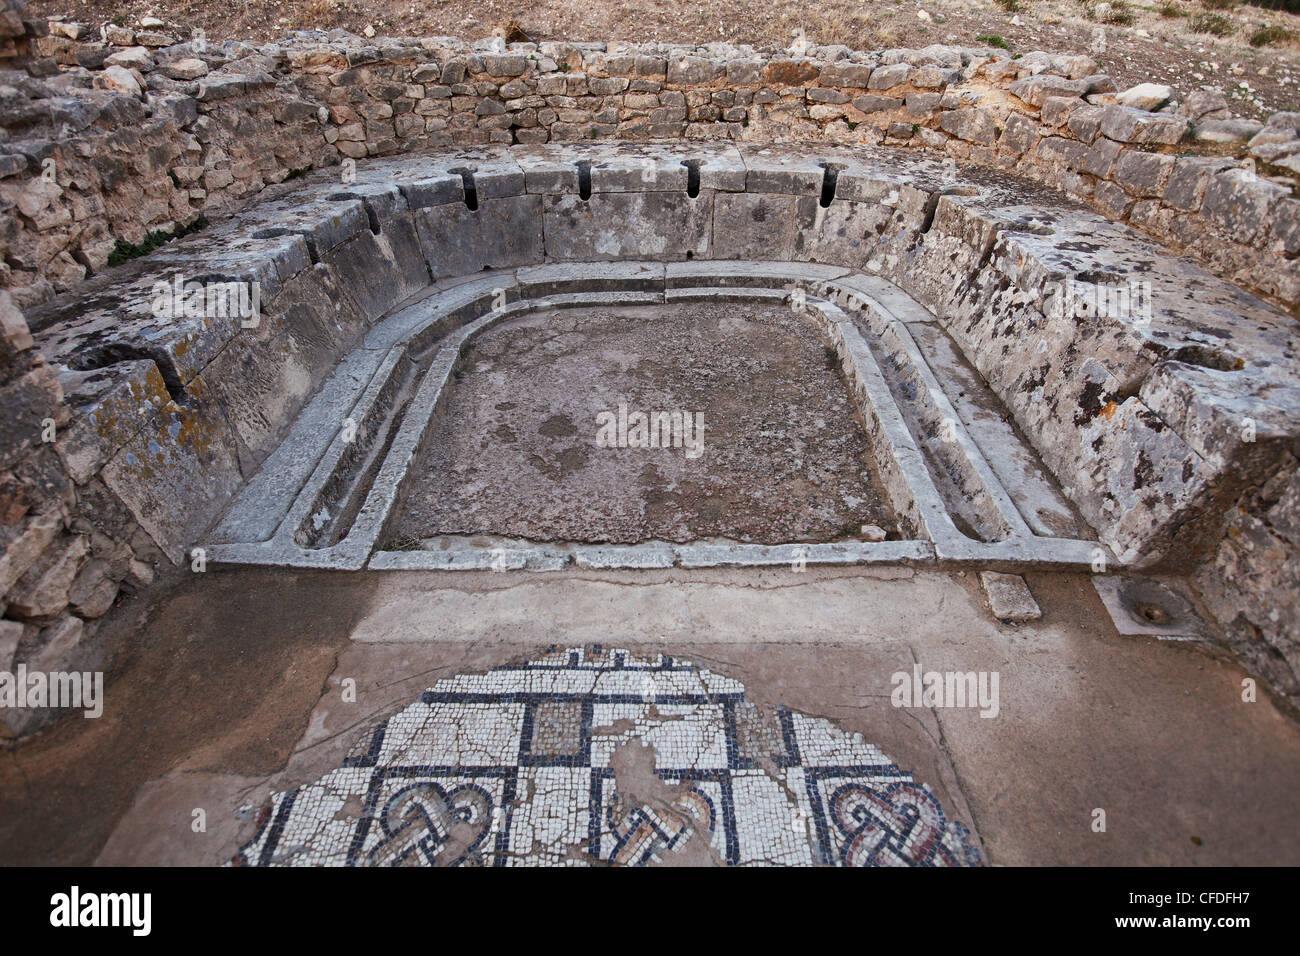 Les ruines romaines de Dougga, site archéologique, site du patrimoine mondial de l'UNESCO, la Tunisie, l'Afrique du Nord, Afrique Banque D'Images